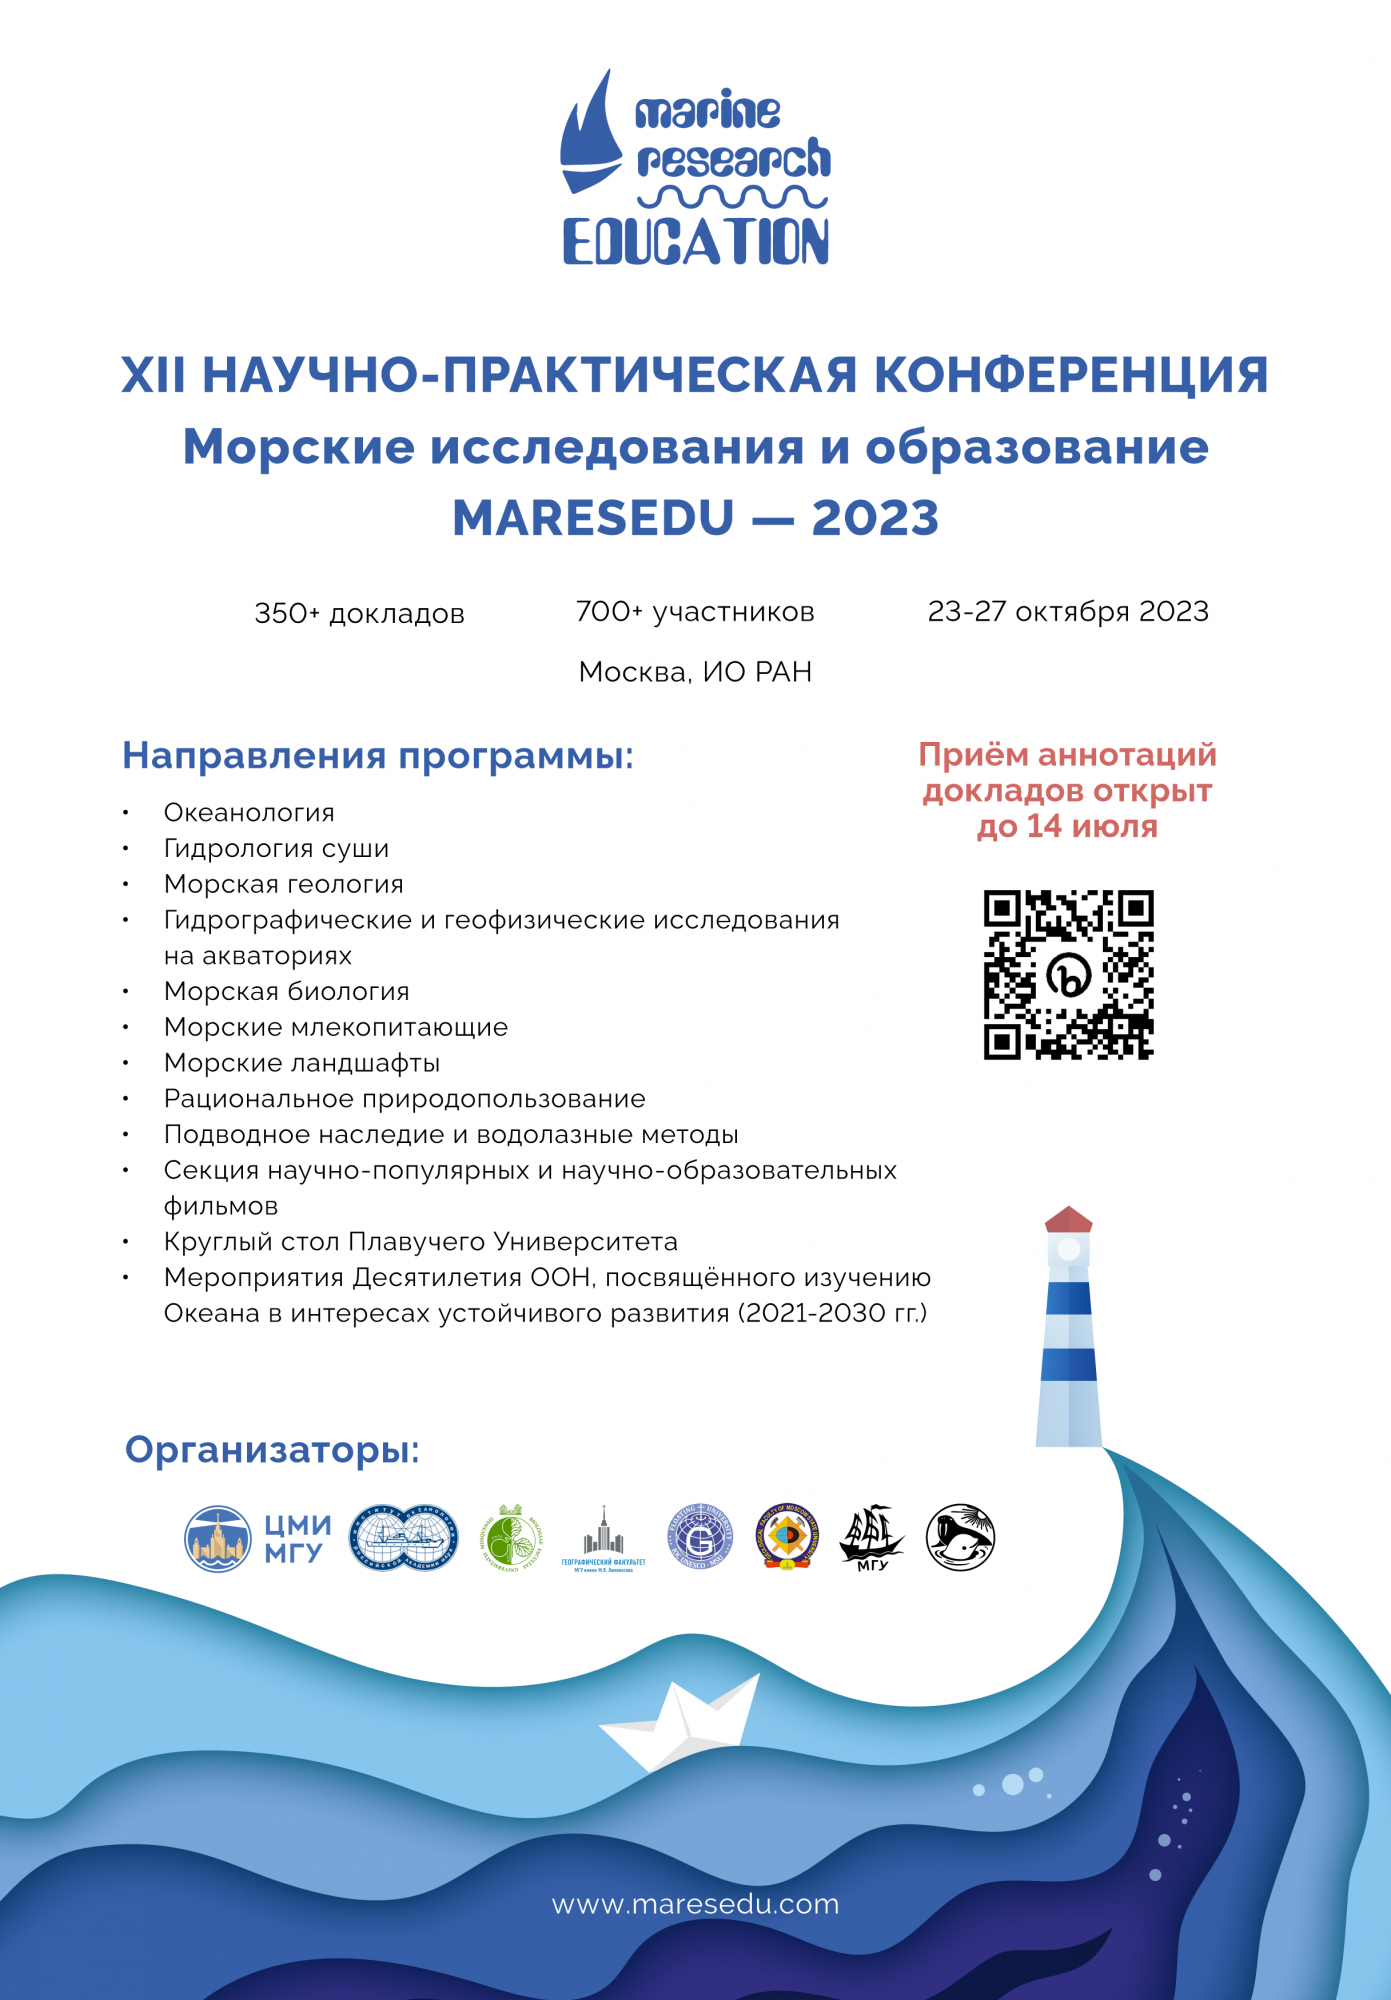 XII Международная научно-практическая конференция «Морские исследования и образование (MARESEDU-2023)»